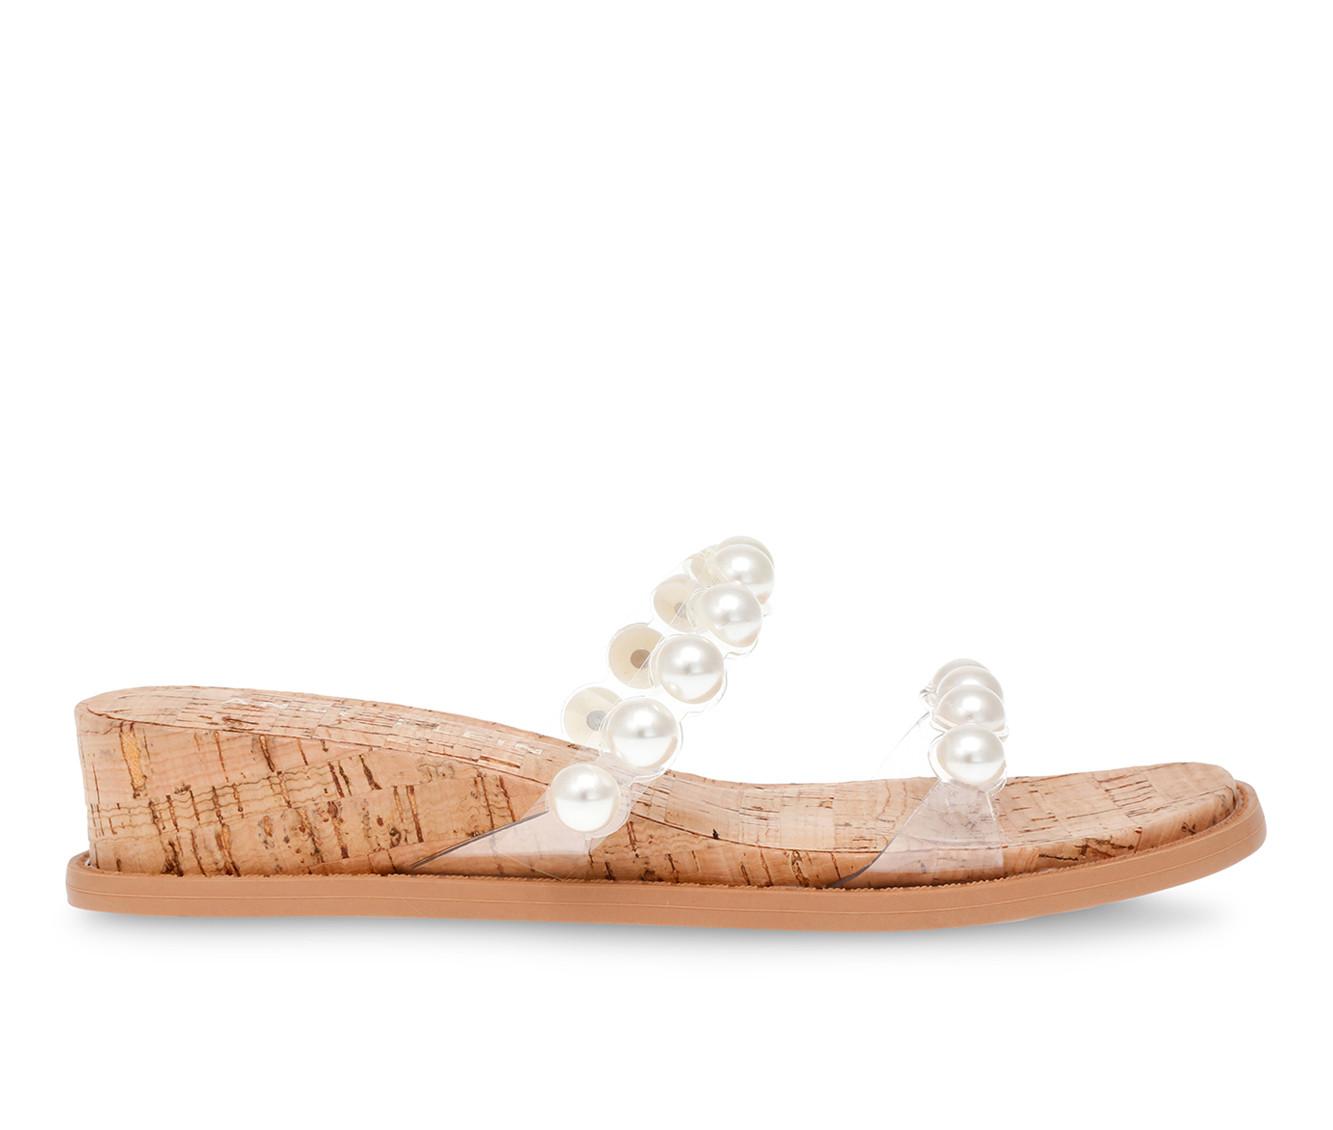 Women's Anne Klein Bee Wedge Sandals